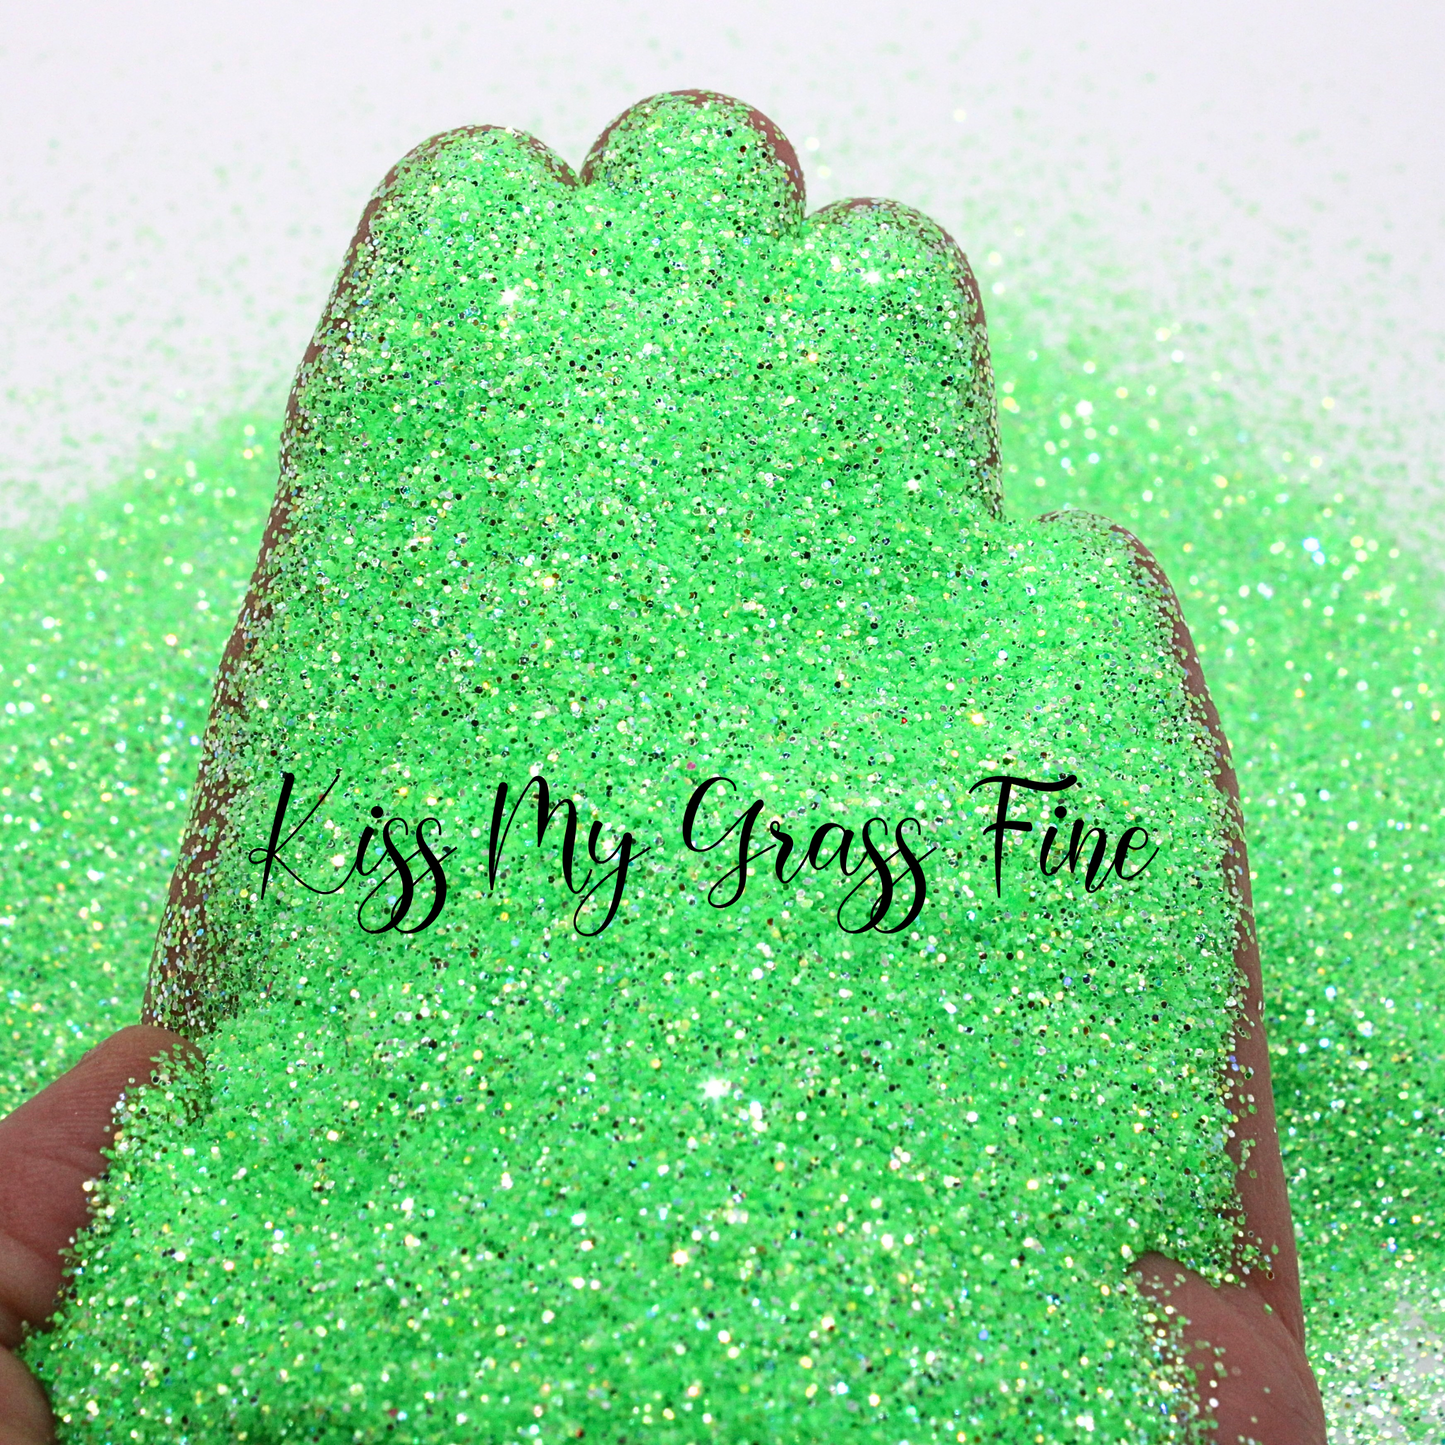 Kiss My Grass Fine Glitter Mix